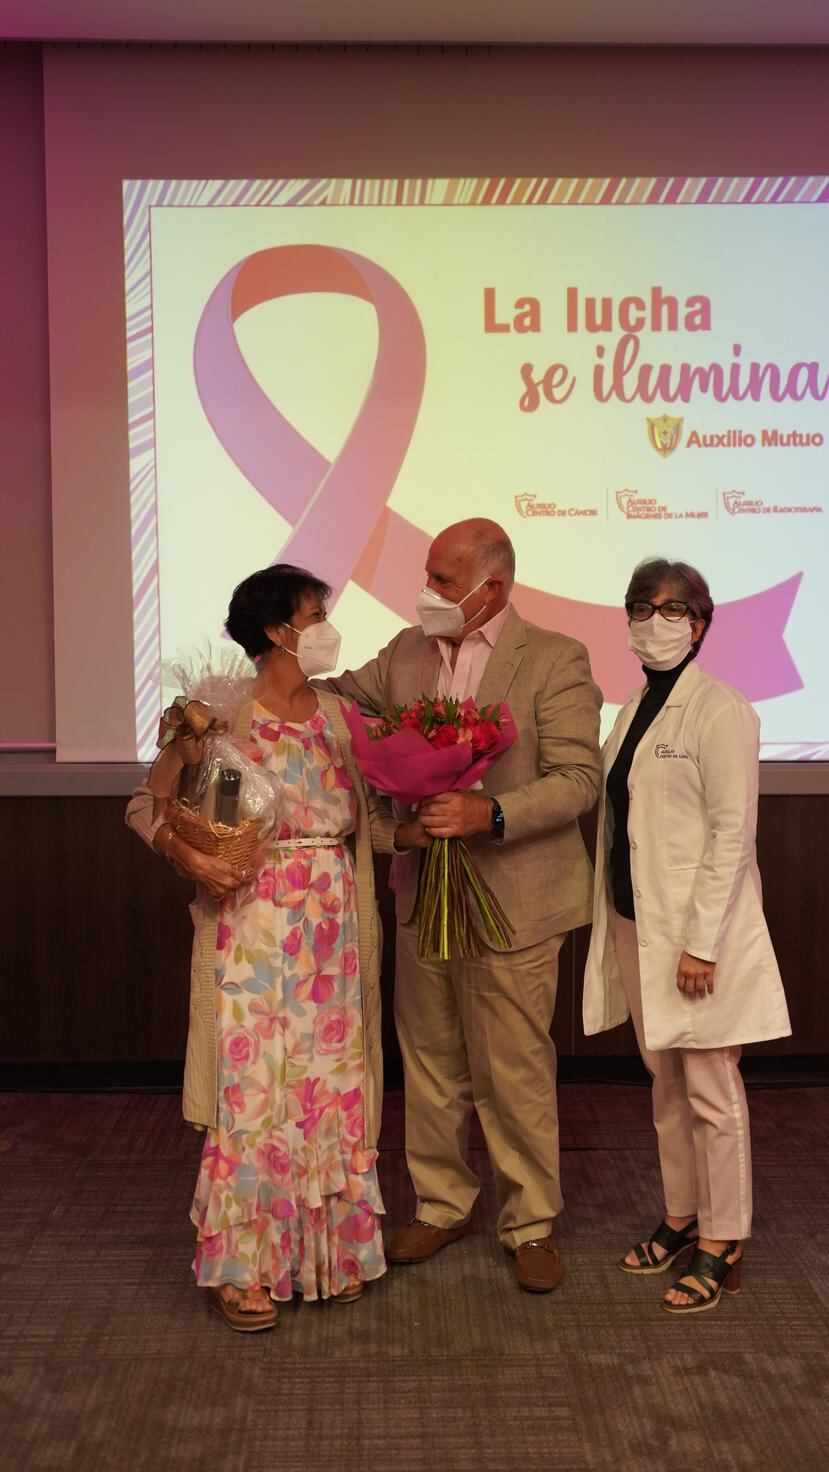 El Hospital Auxilio Mutuo selecciona cada año una madrina del “Encendido Rosa”, en representación de todos los pacientes de cáncer de mama, y este año recayó en Yolanda Rodríguez Nieves, una guerrera inigualable.